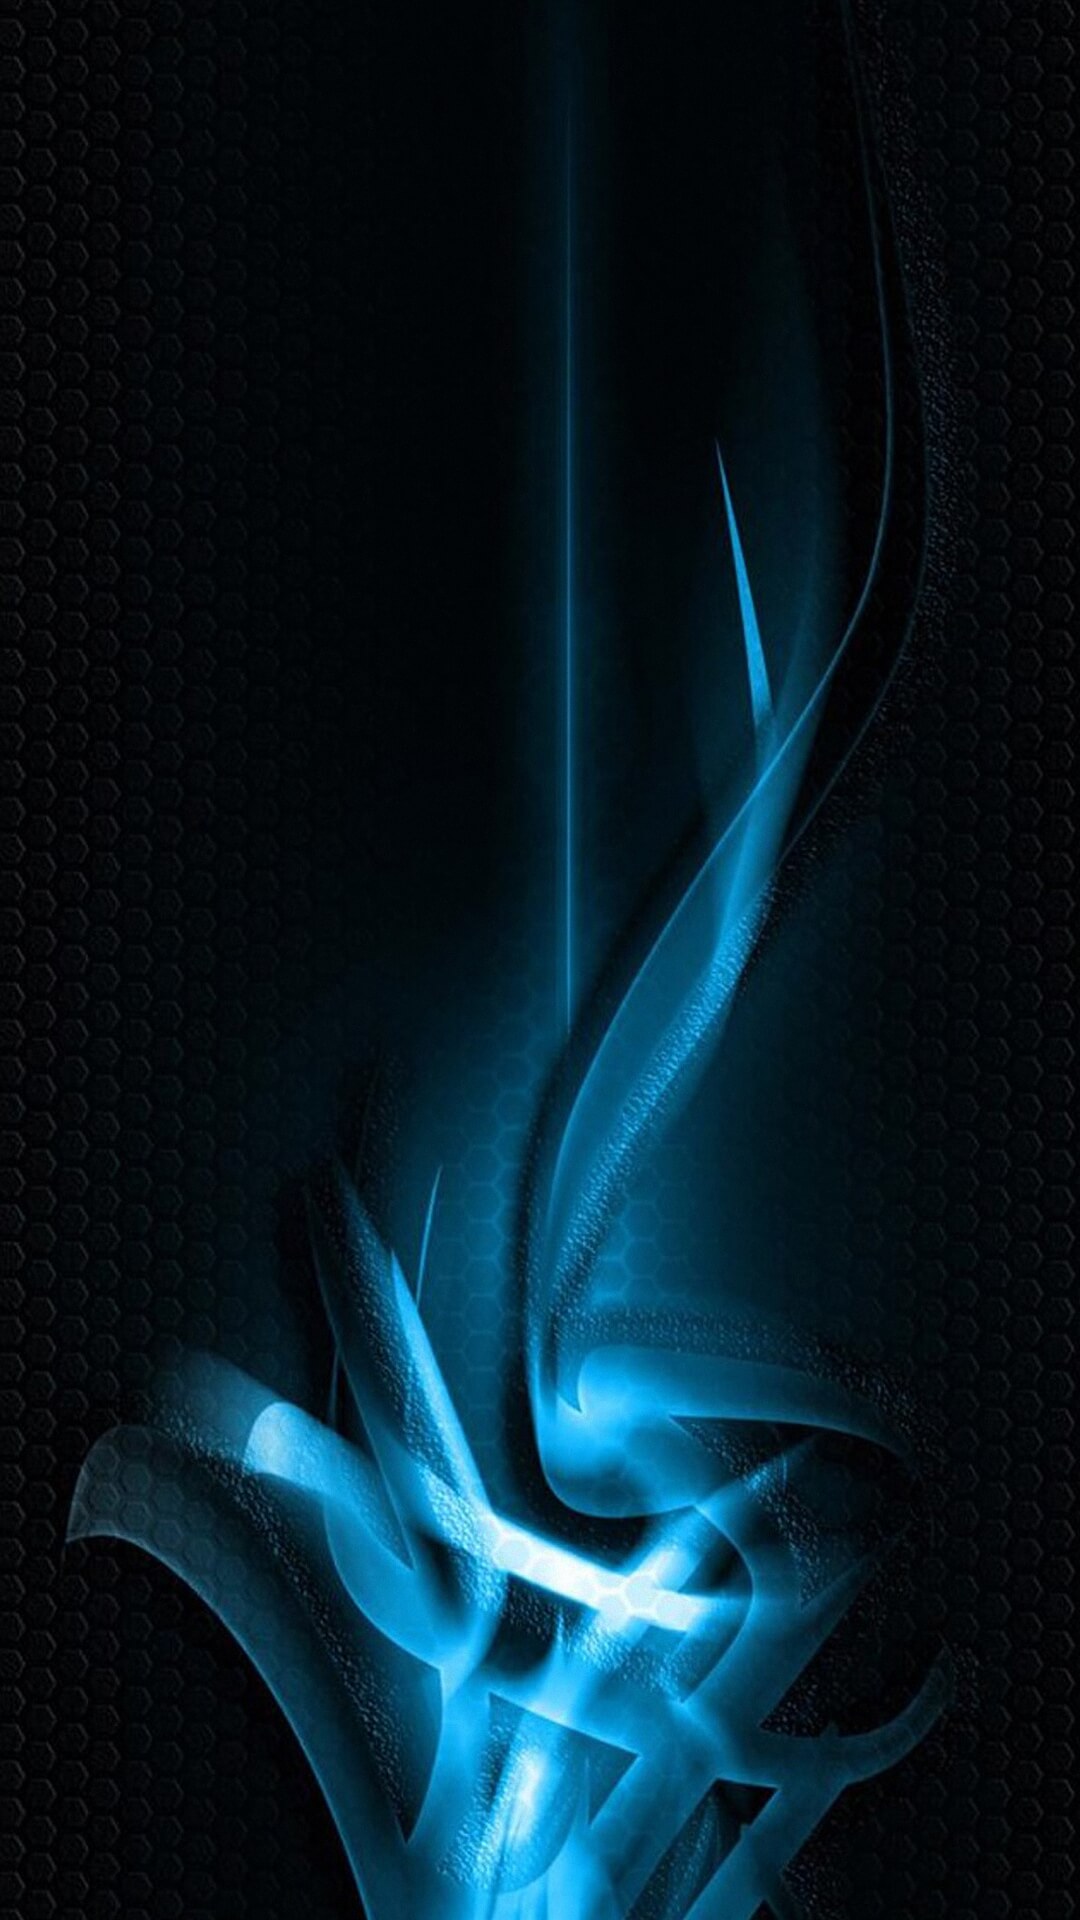 hd wallpaper für iphone 6 1080p,blau,wasser,flamme,elektrisches blau,feuer